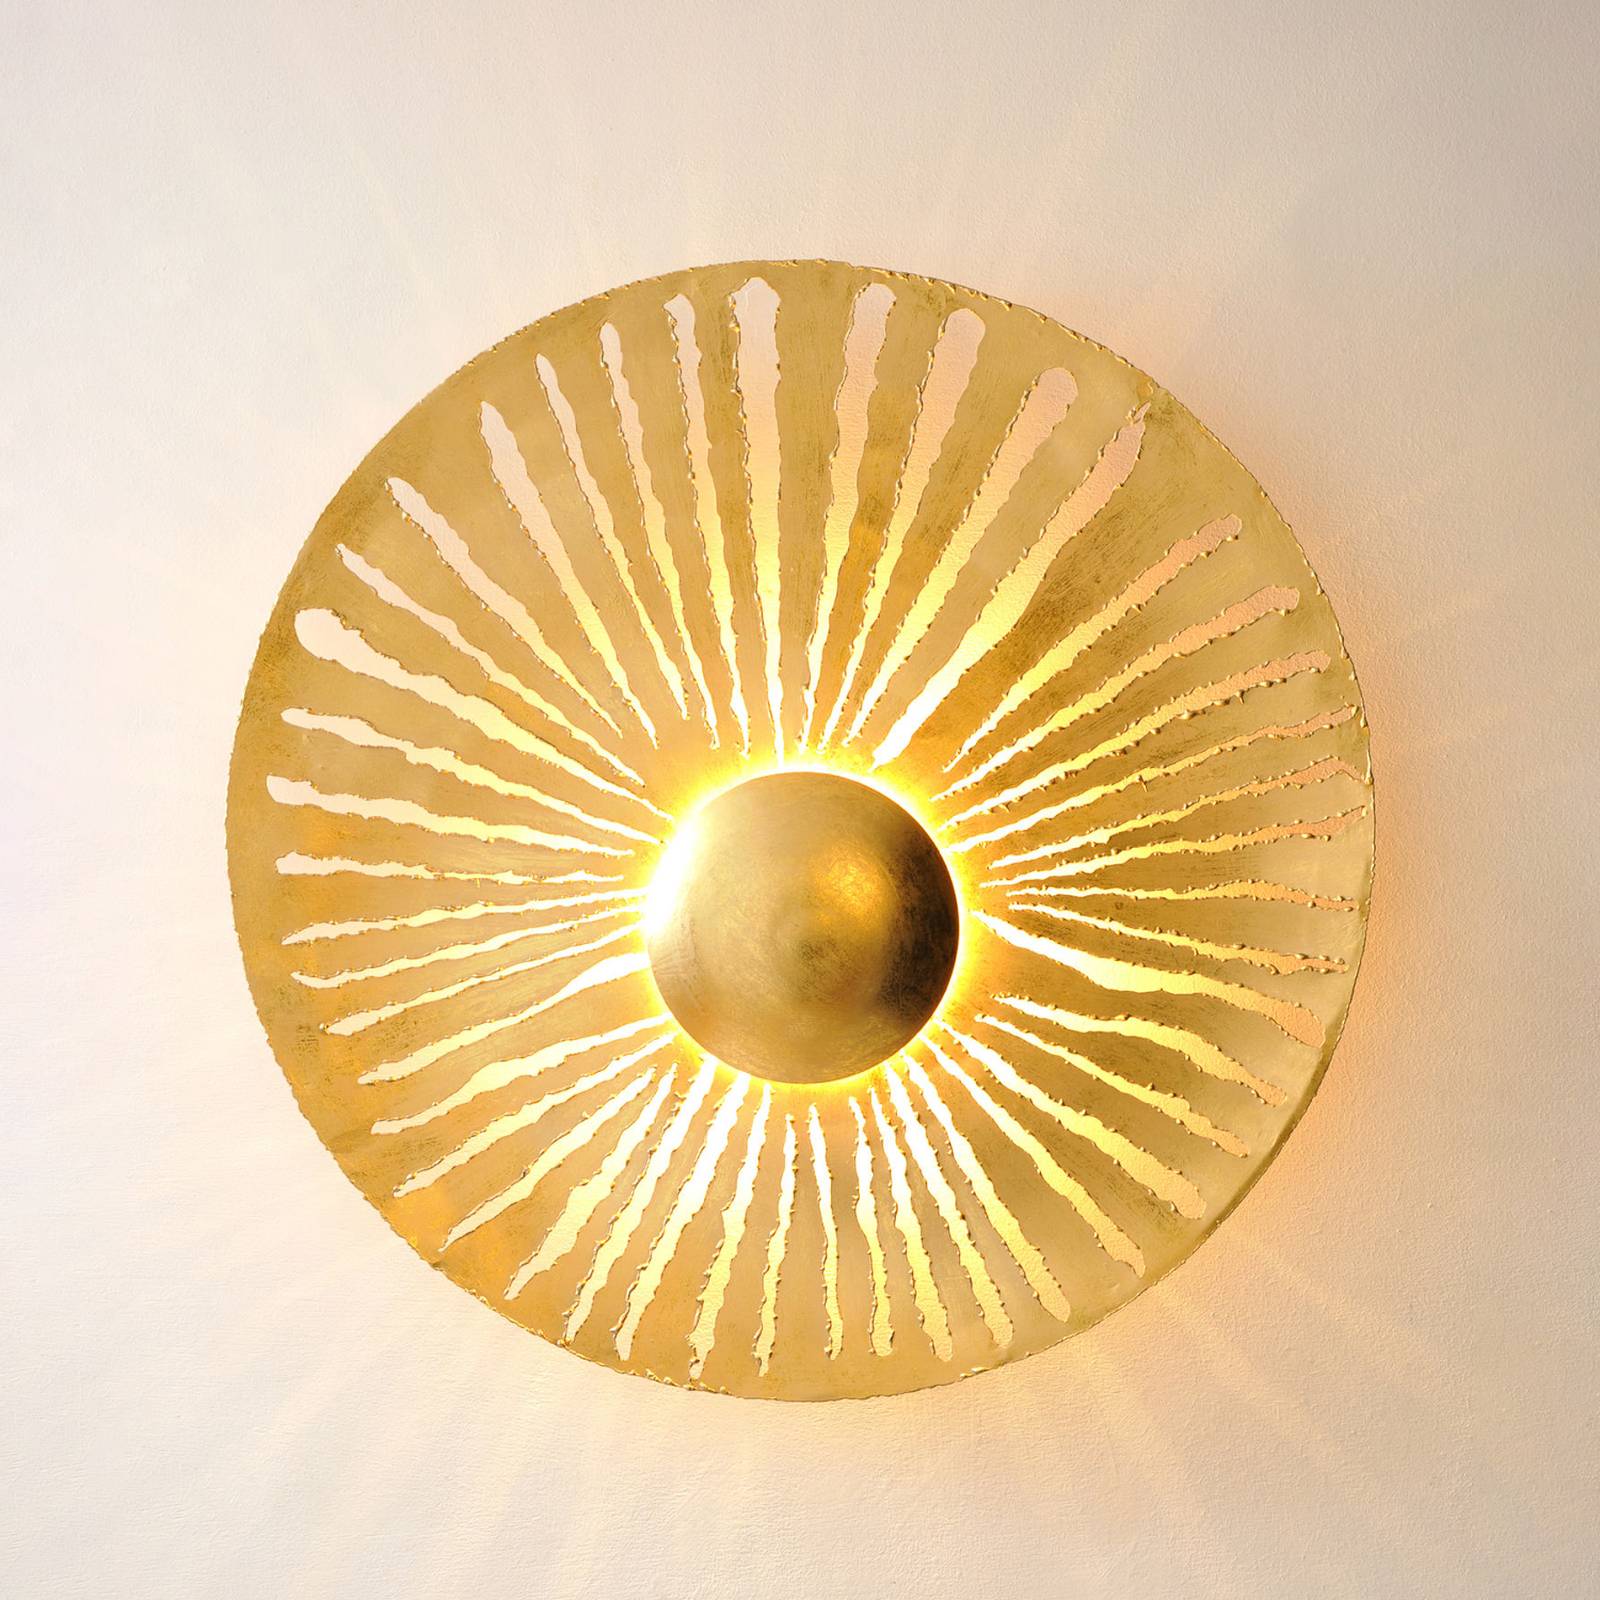 Pietro væglampe guldfarvet Ø 71 cm jern